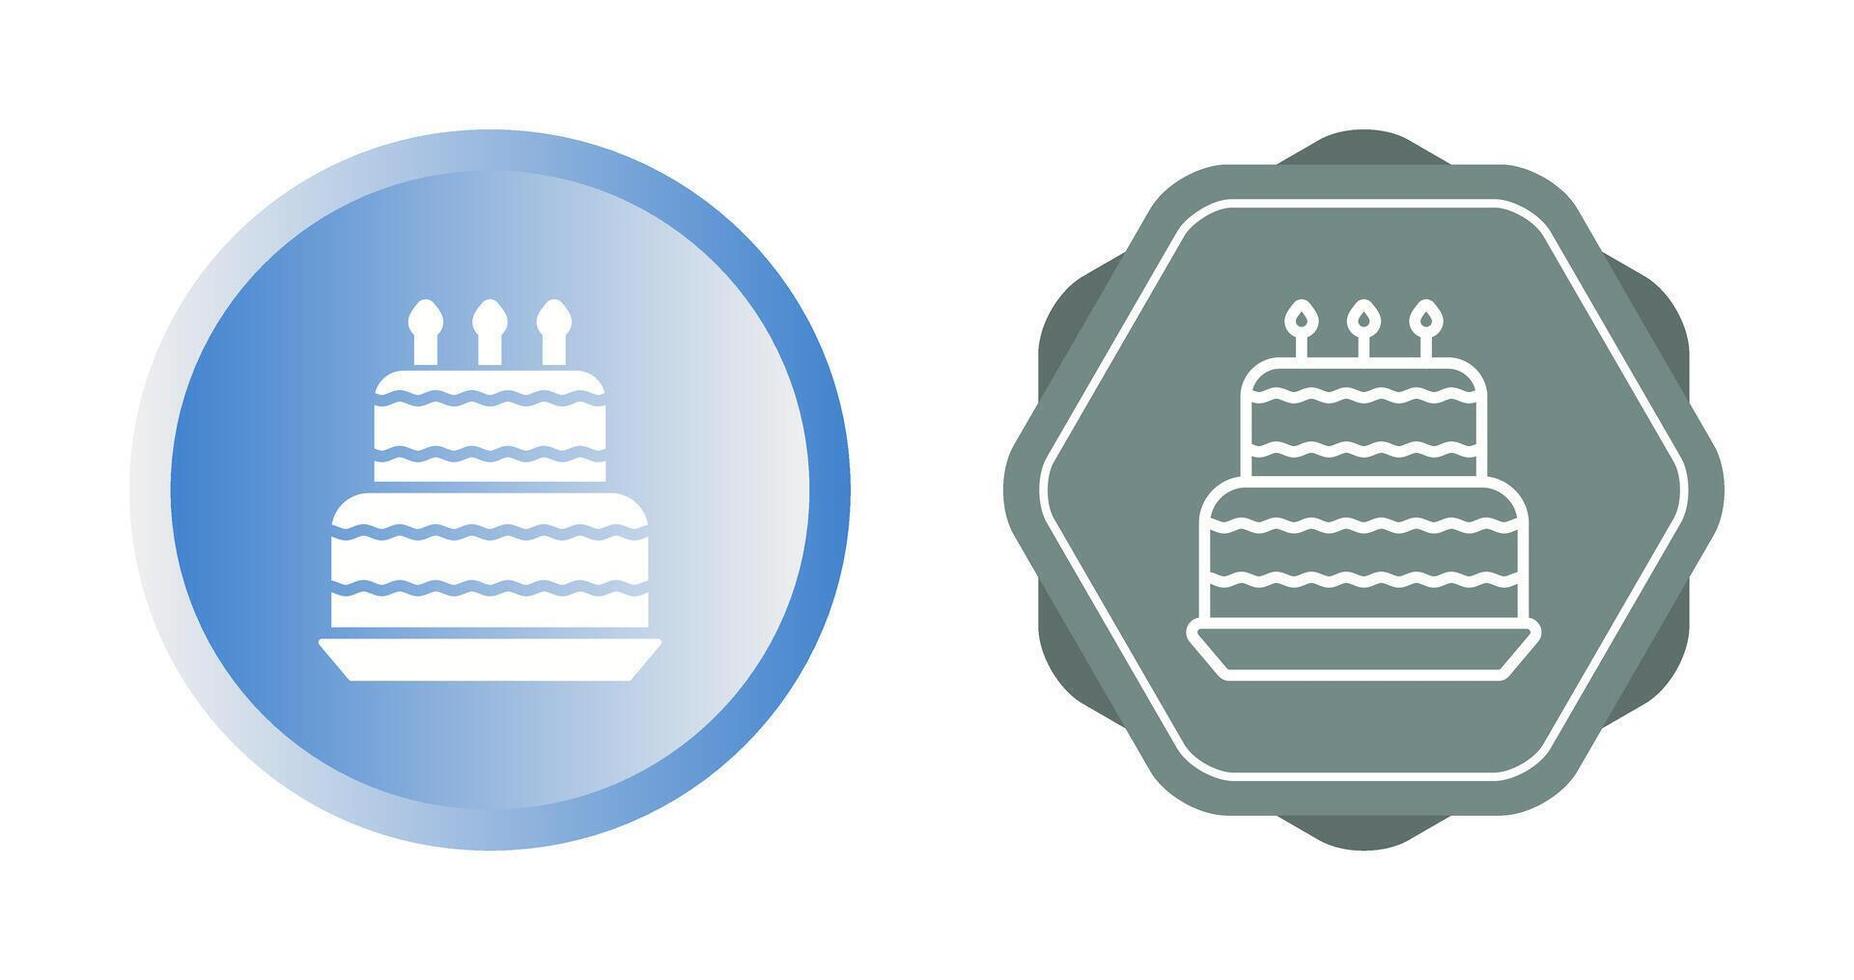 ícone de vetor de bolo de aniversário